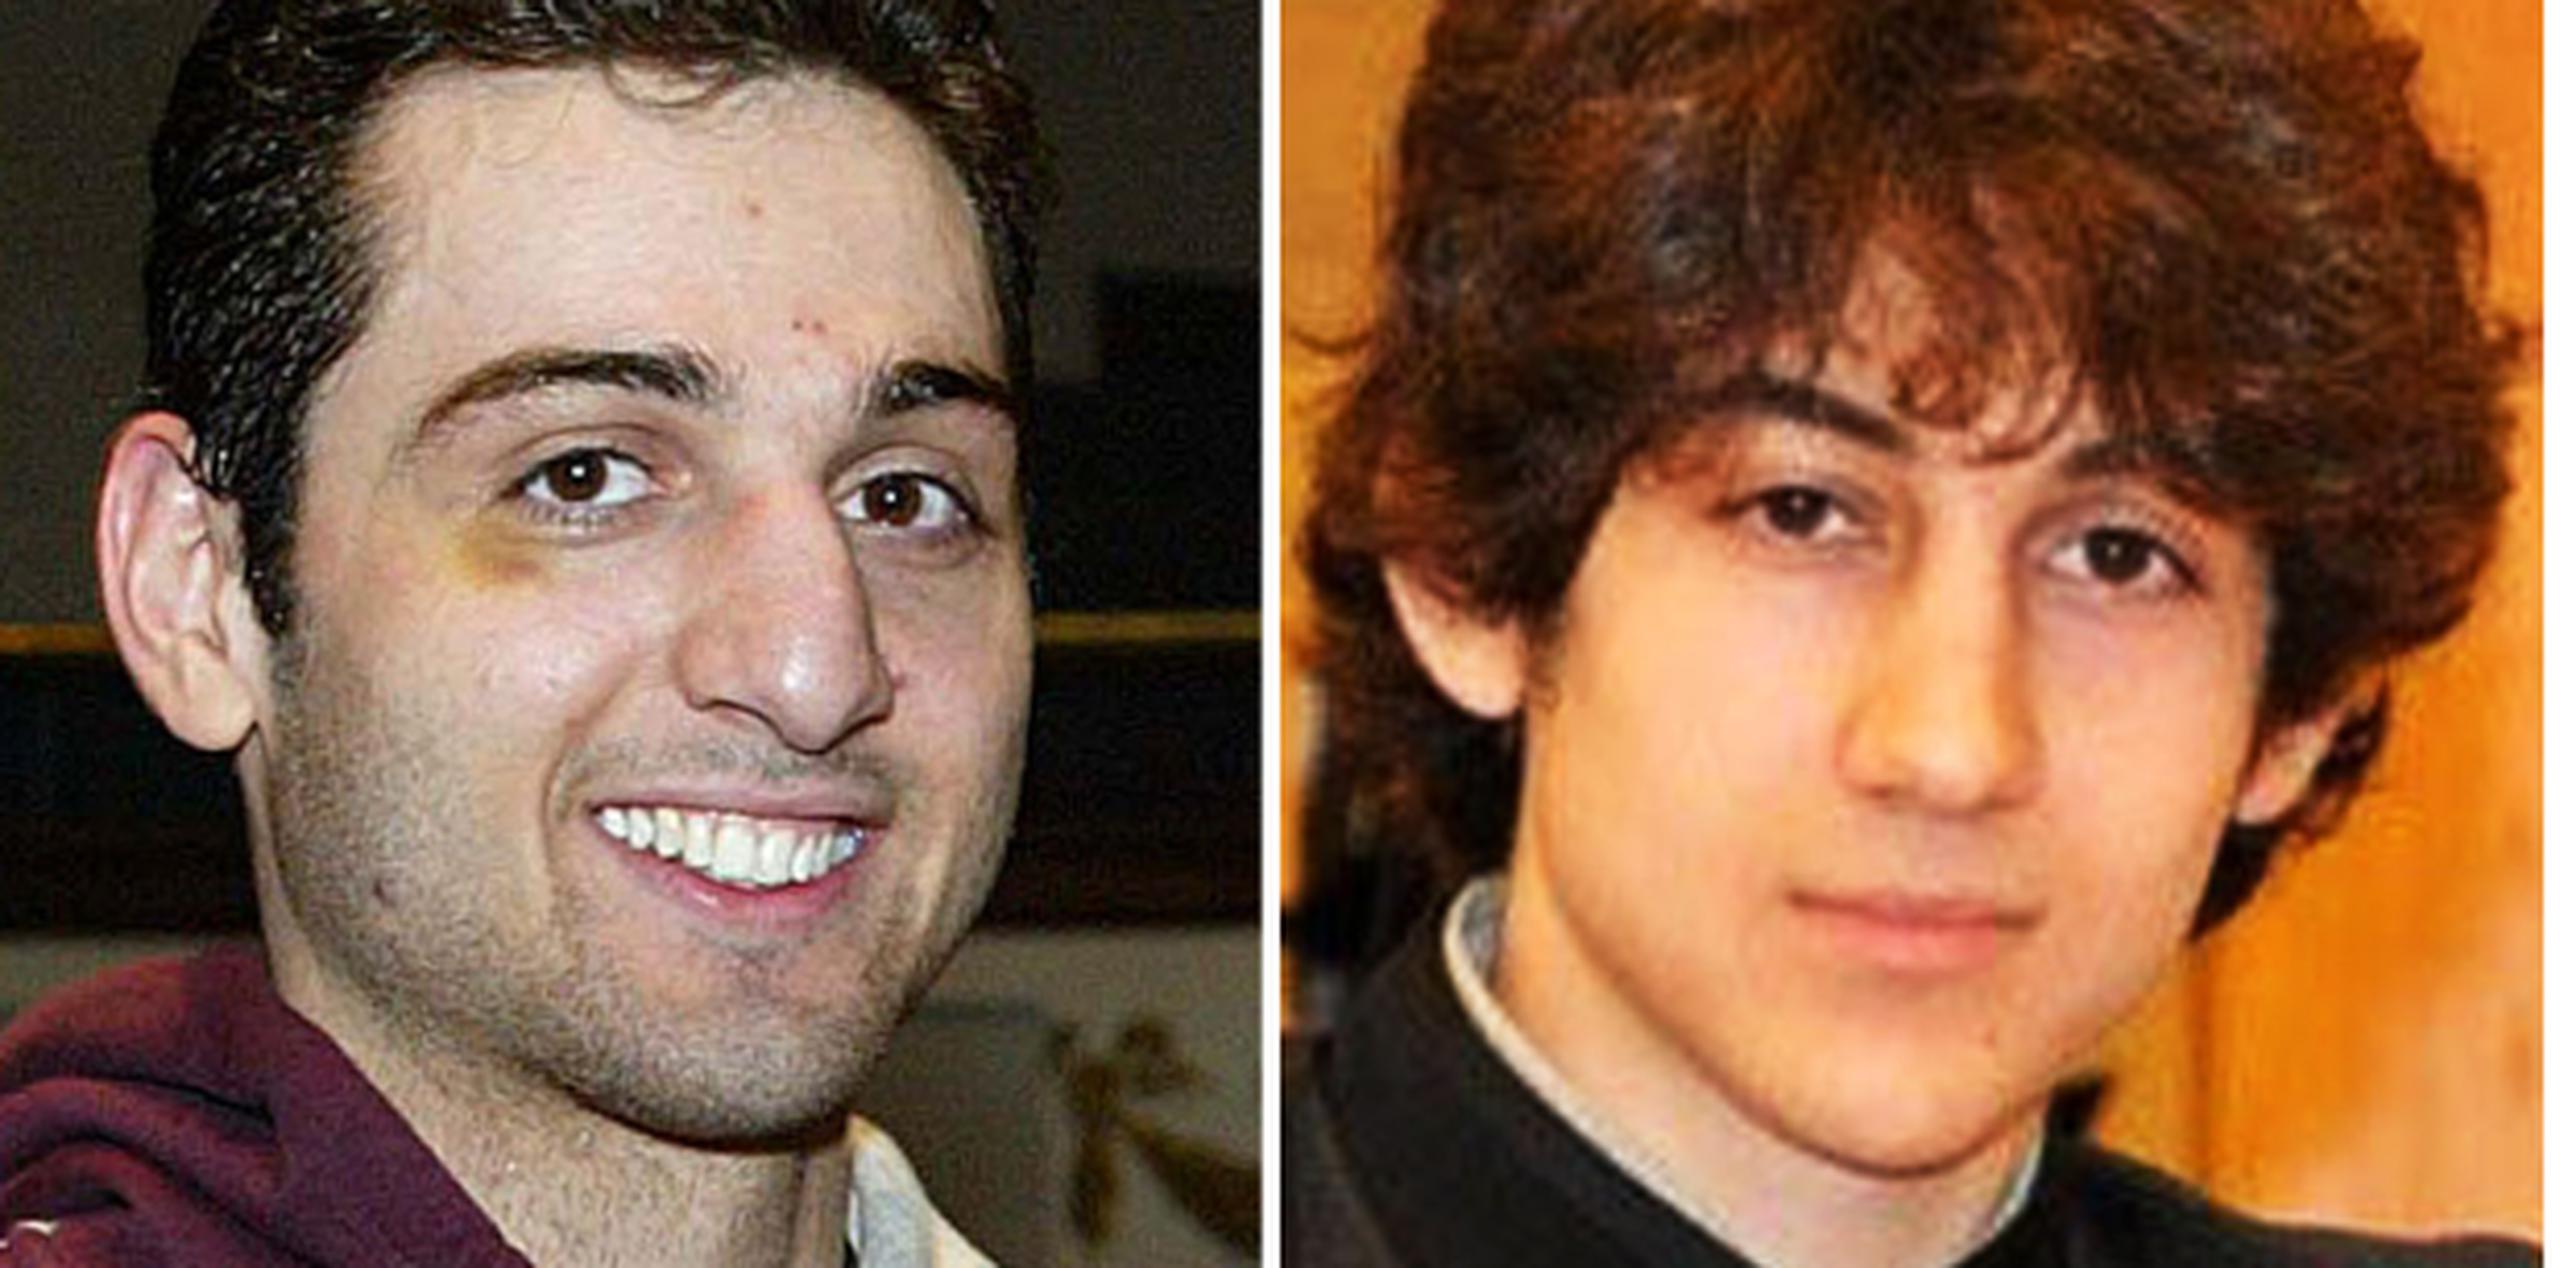 Los investigadores han concluido de sus entrevistas con Dzhokhar en el hospital que los dos hermanos Tsarnaev colocaron y detonaron las dos bombas. (AP)